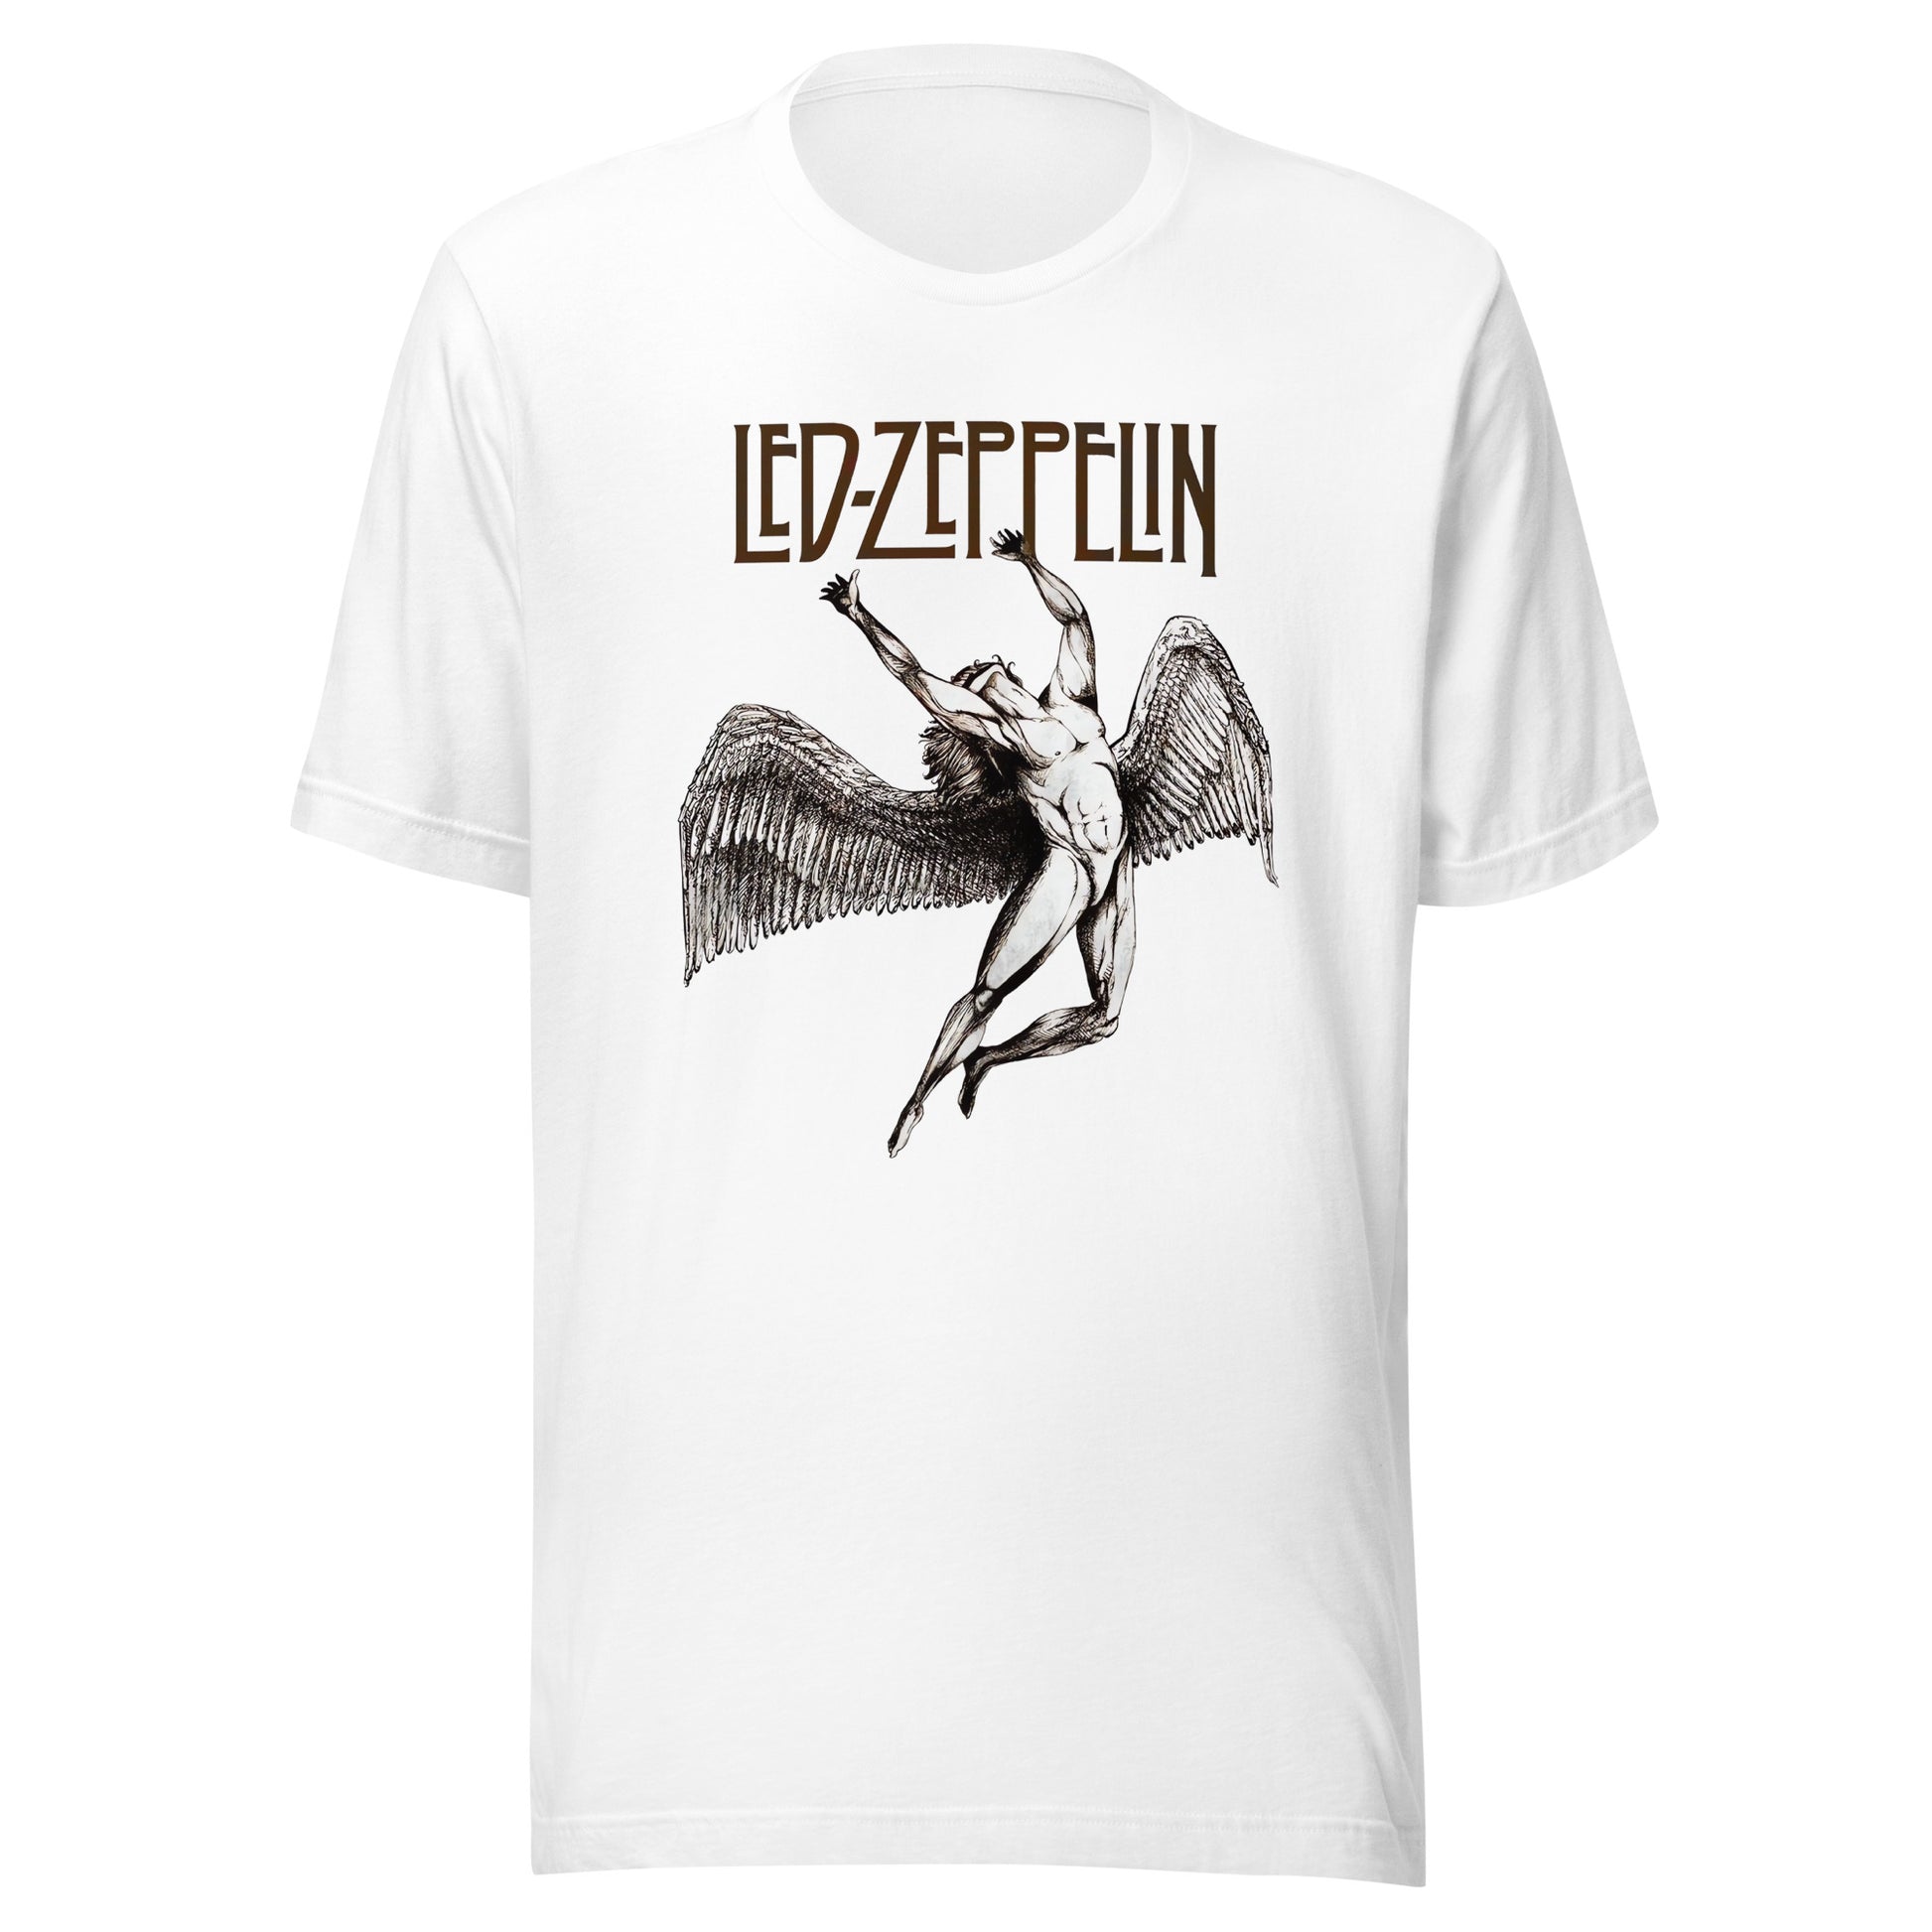 ¡Compra el mejor merchandising en Superstar! Encuentra diseños únicos y de alta calidad en playeras, Shirt de Led Zeppelin Angel W